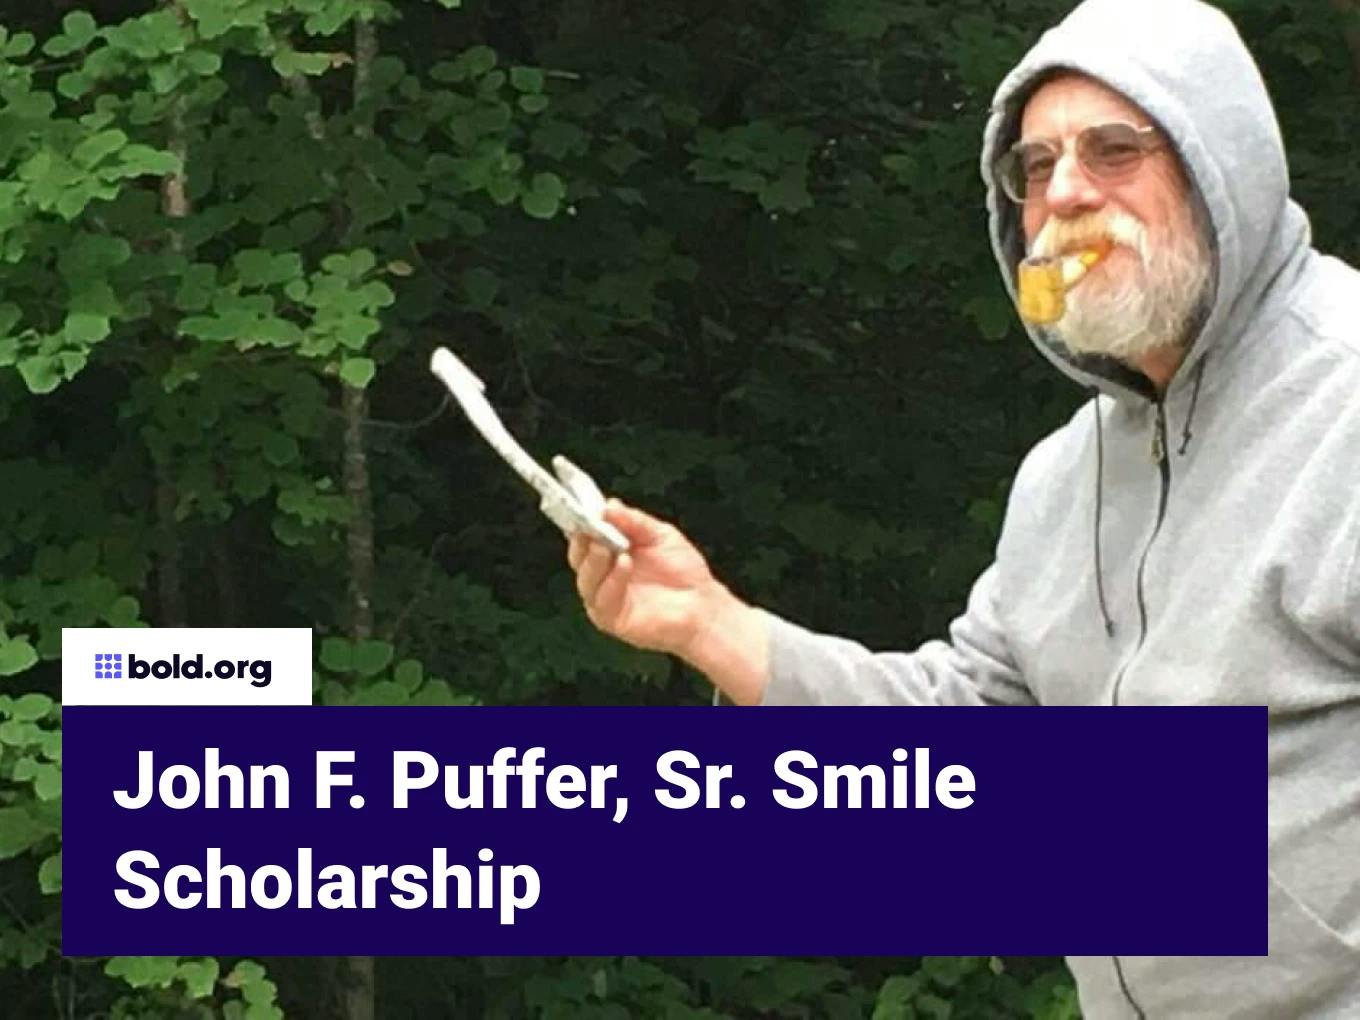 John F. Puffer, Sr. Smile Scholarship